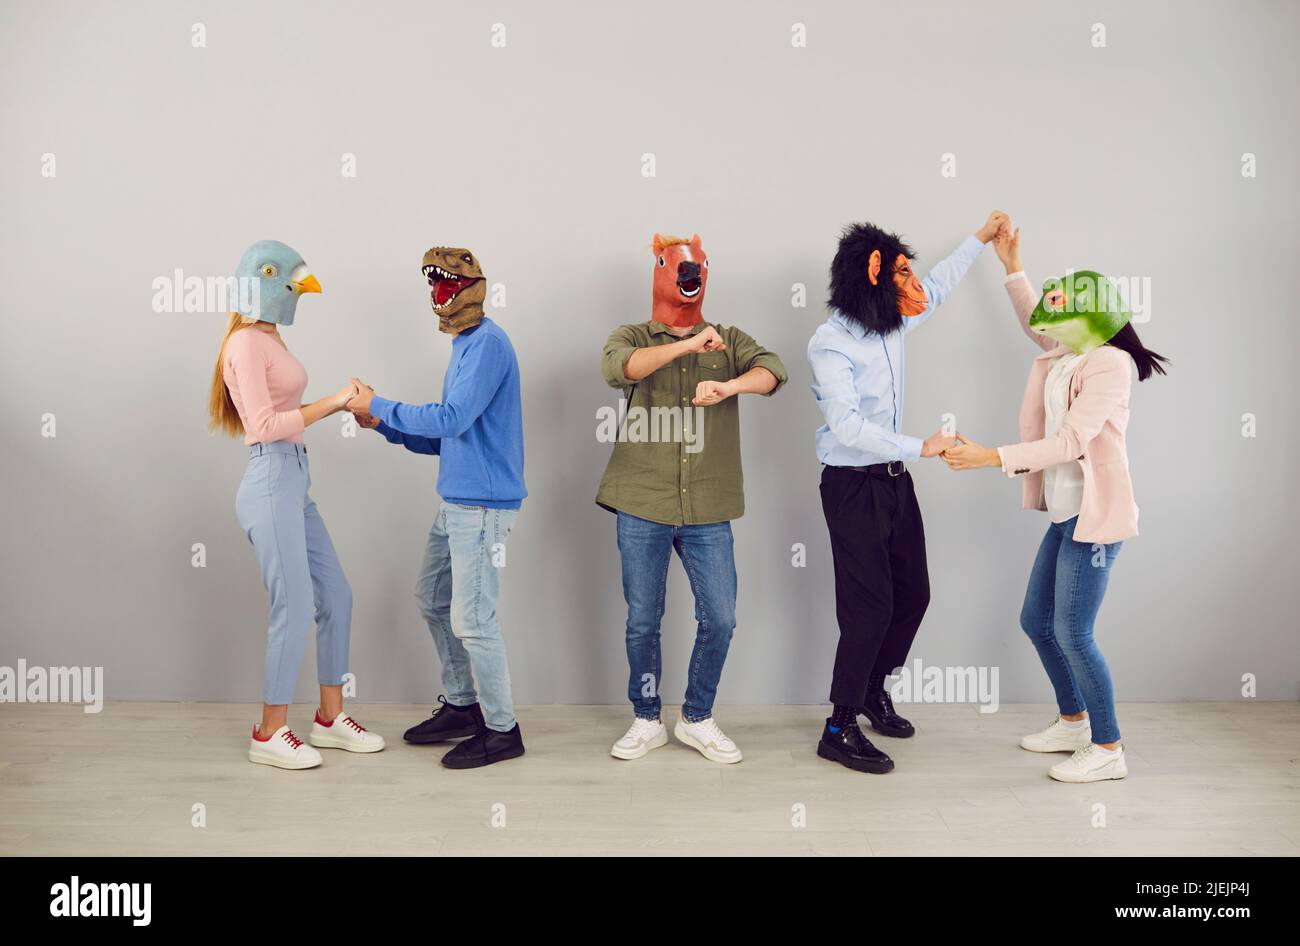 Gente divertida en máscaras de animales bailando juntos Foto de stock